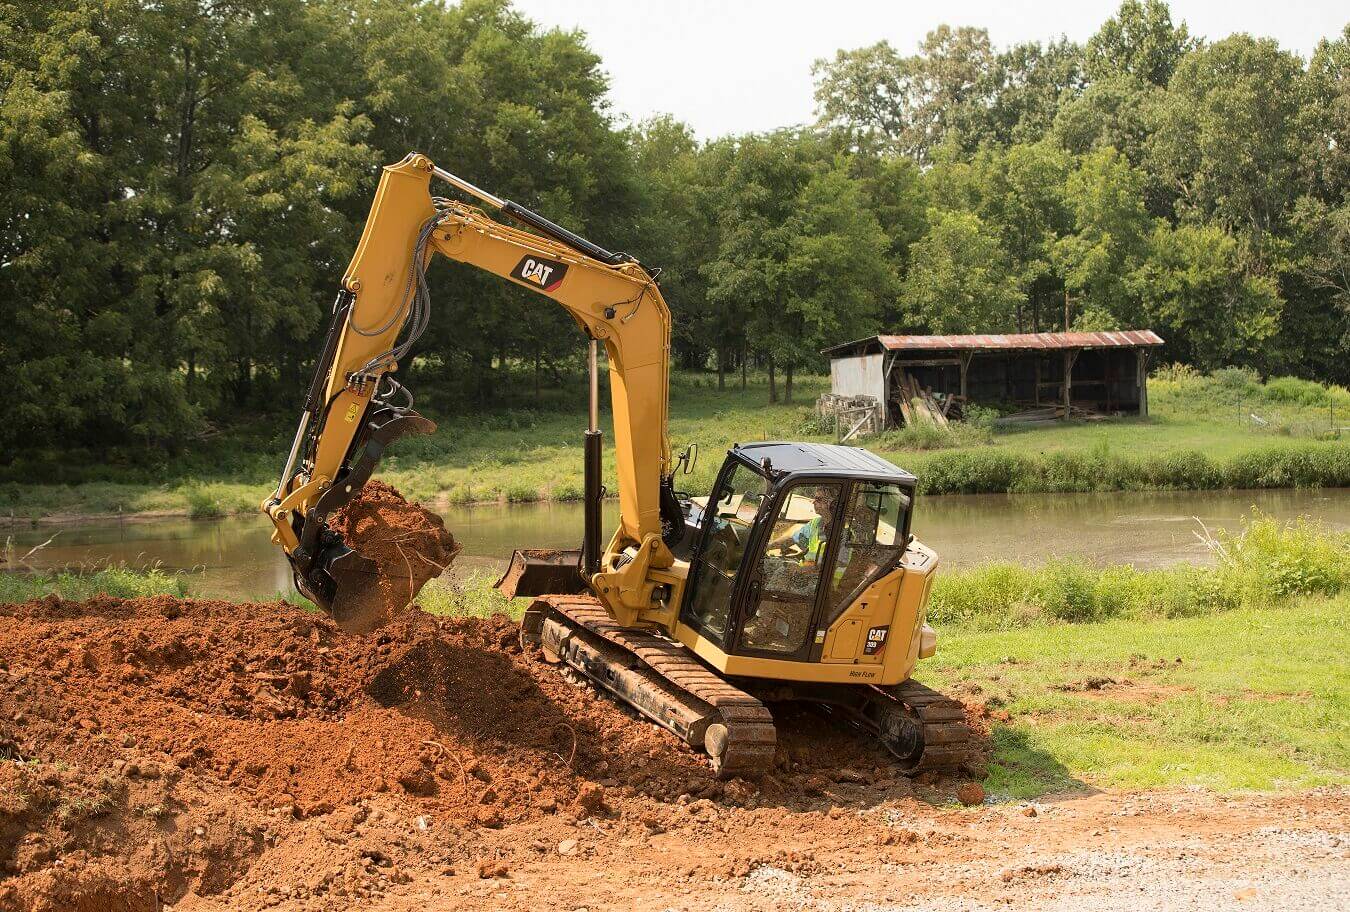 Escavatore Caterpillar a noleggio CGTE durante lavoro di scavo per opere di cura del verde CGTE Vermietung: